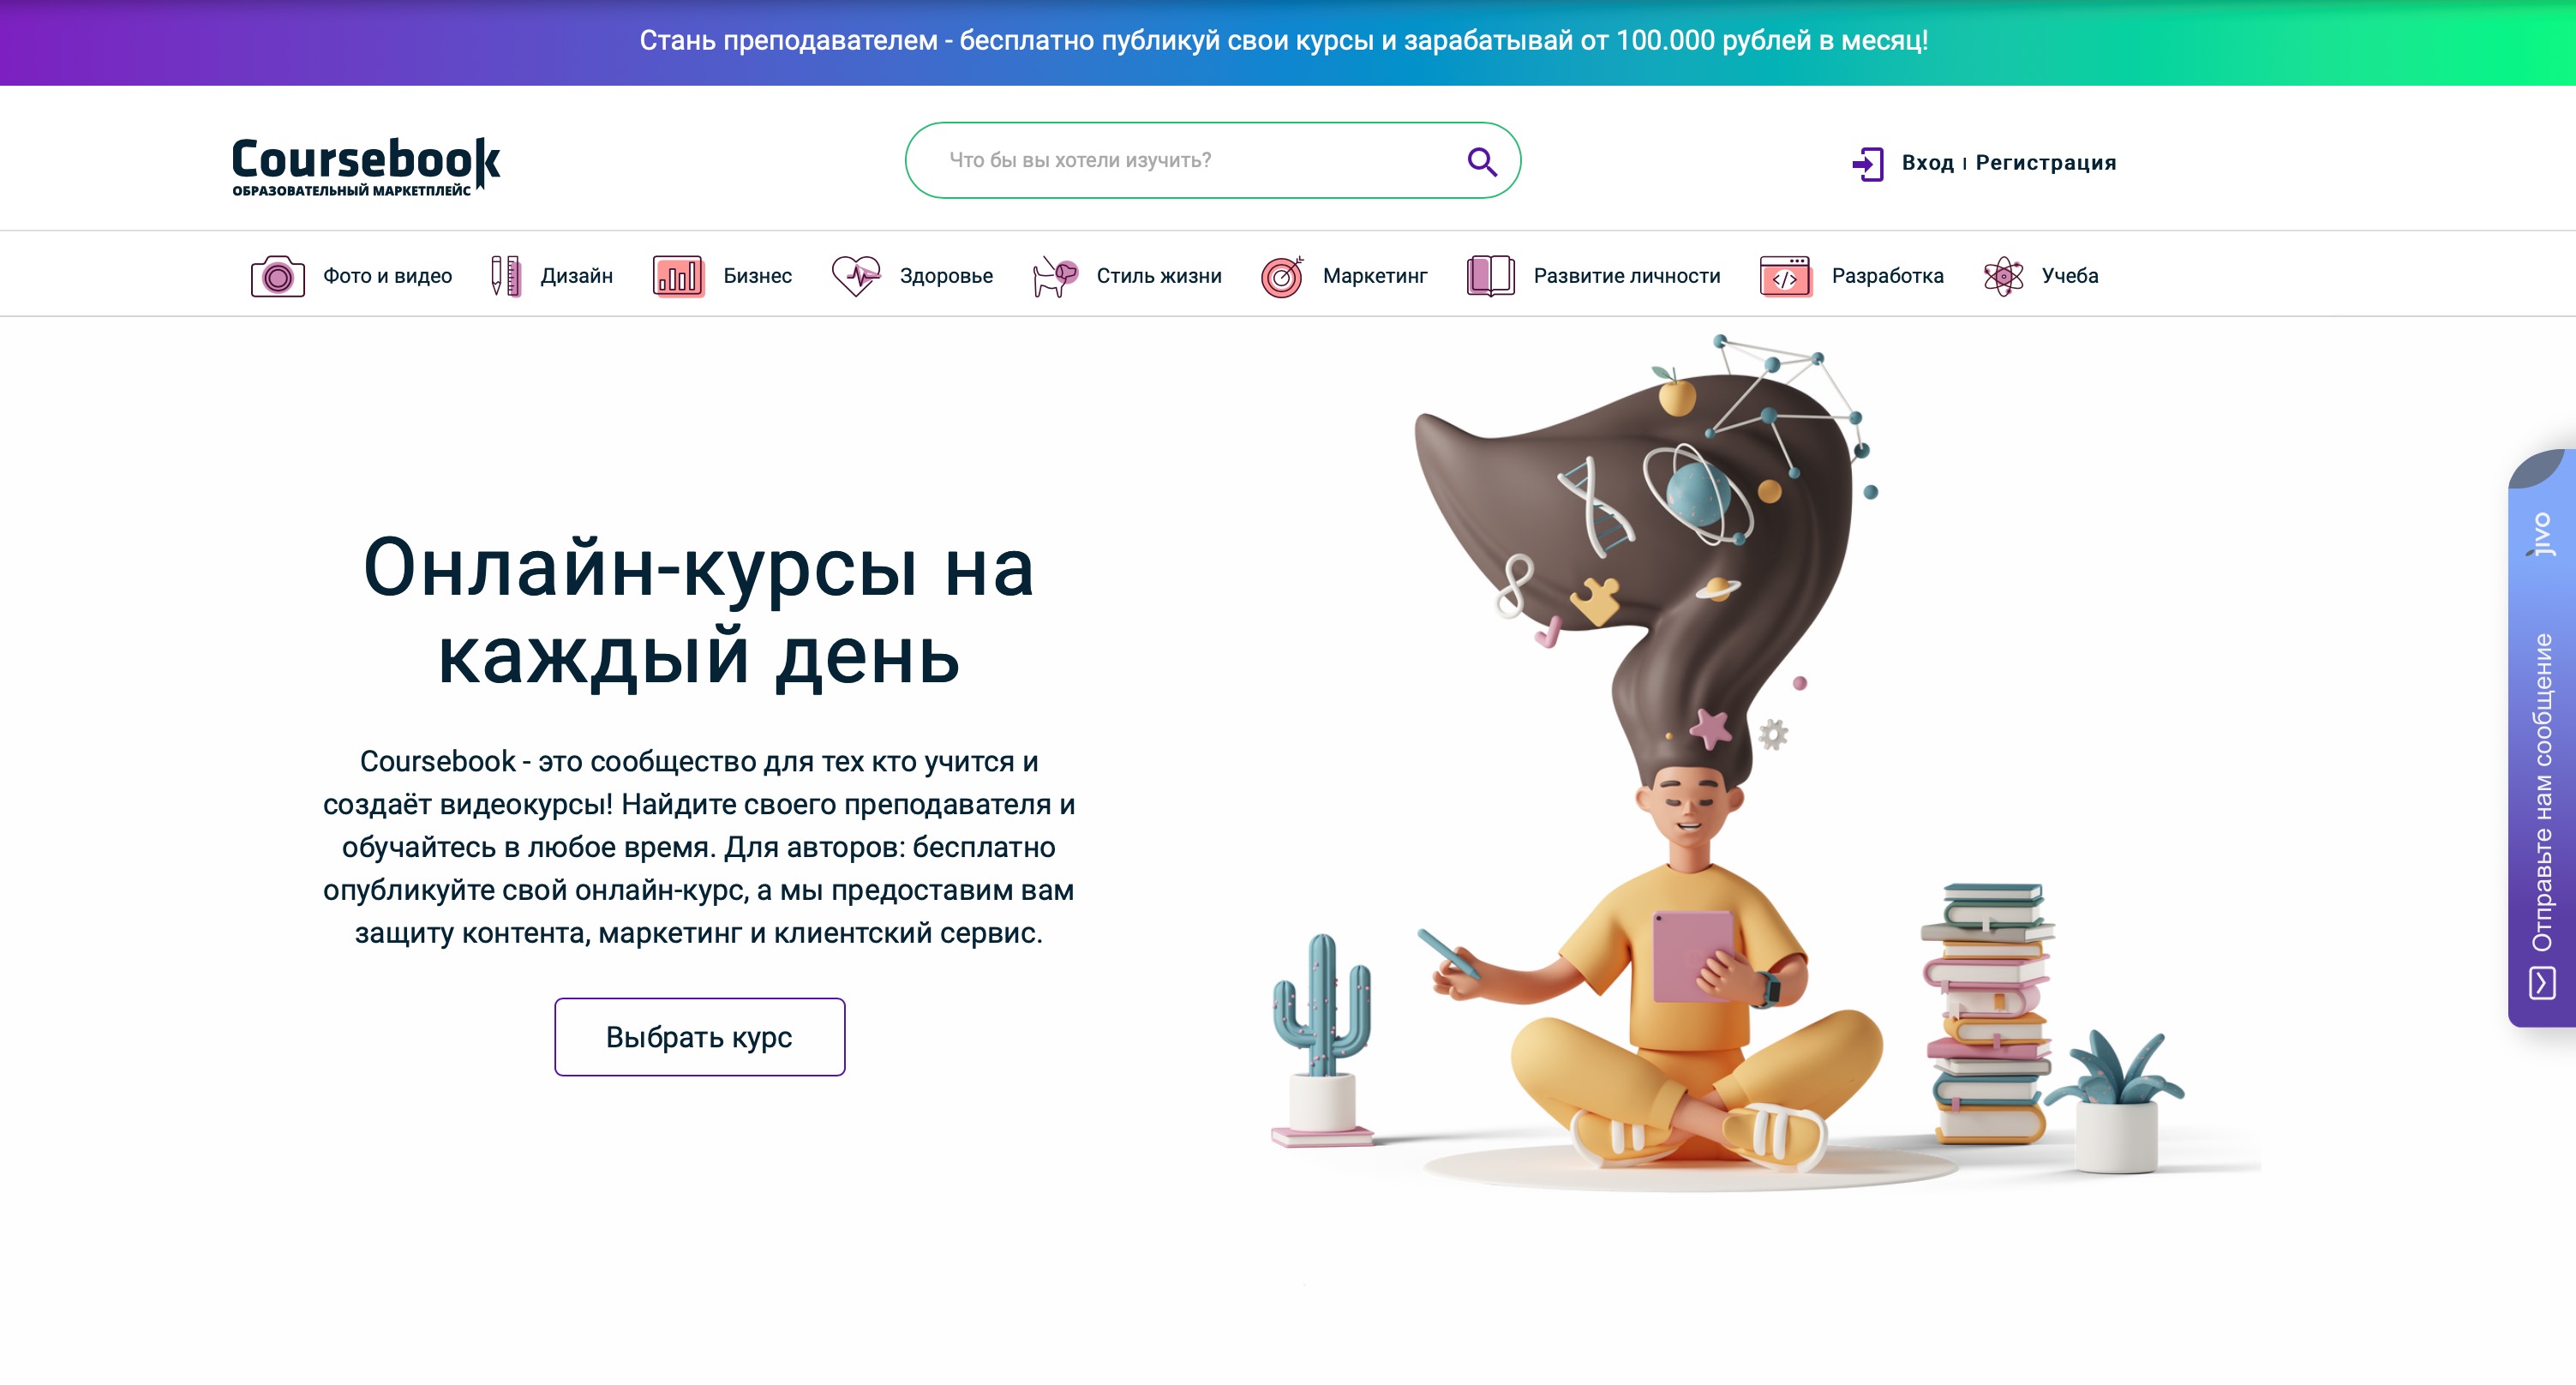 ООО ЮНИКОД запустила первый бесплатный образовательный маркетплейс